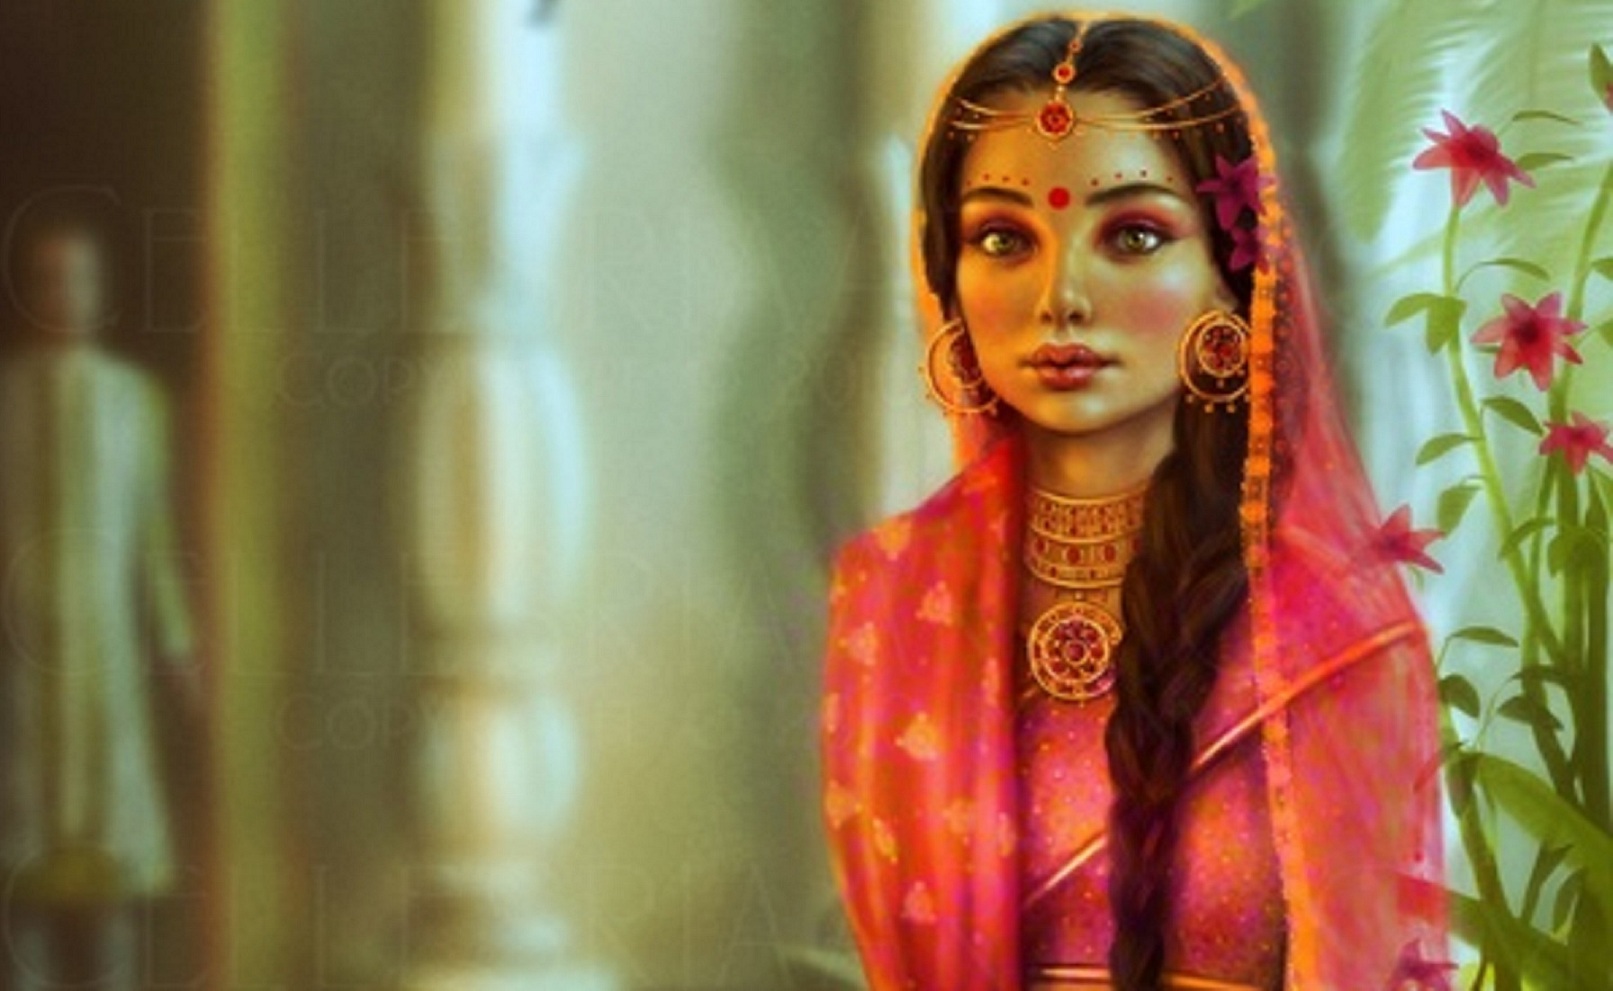 인도 여자 벽지,신전,미술,사진술,초상화,페인트 등